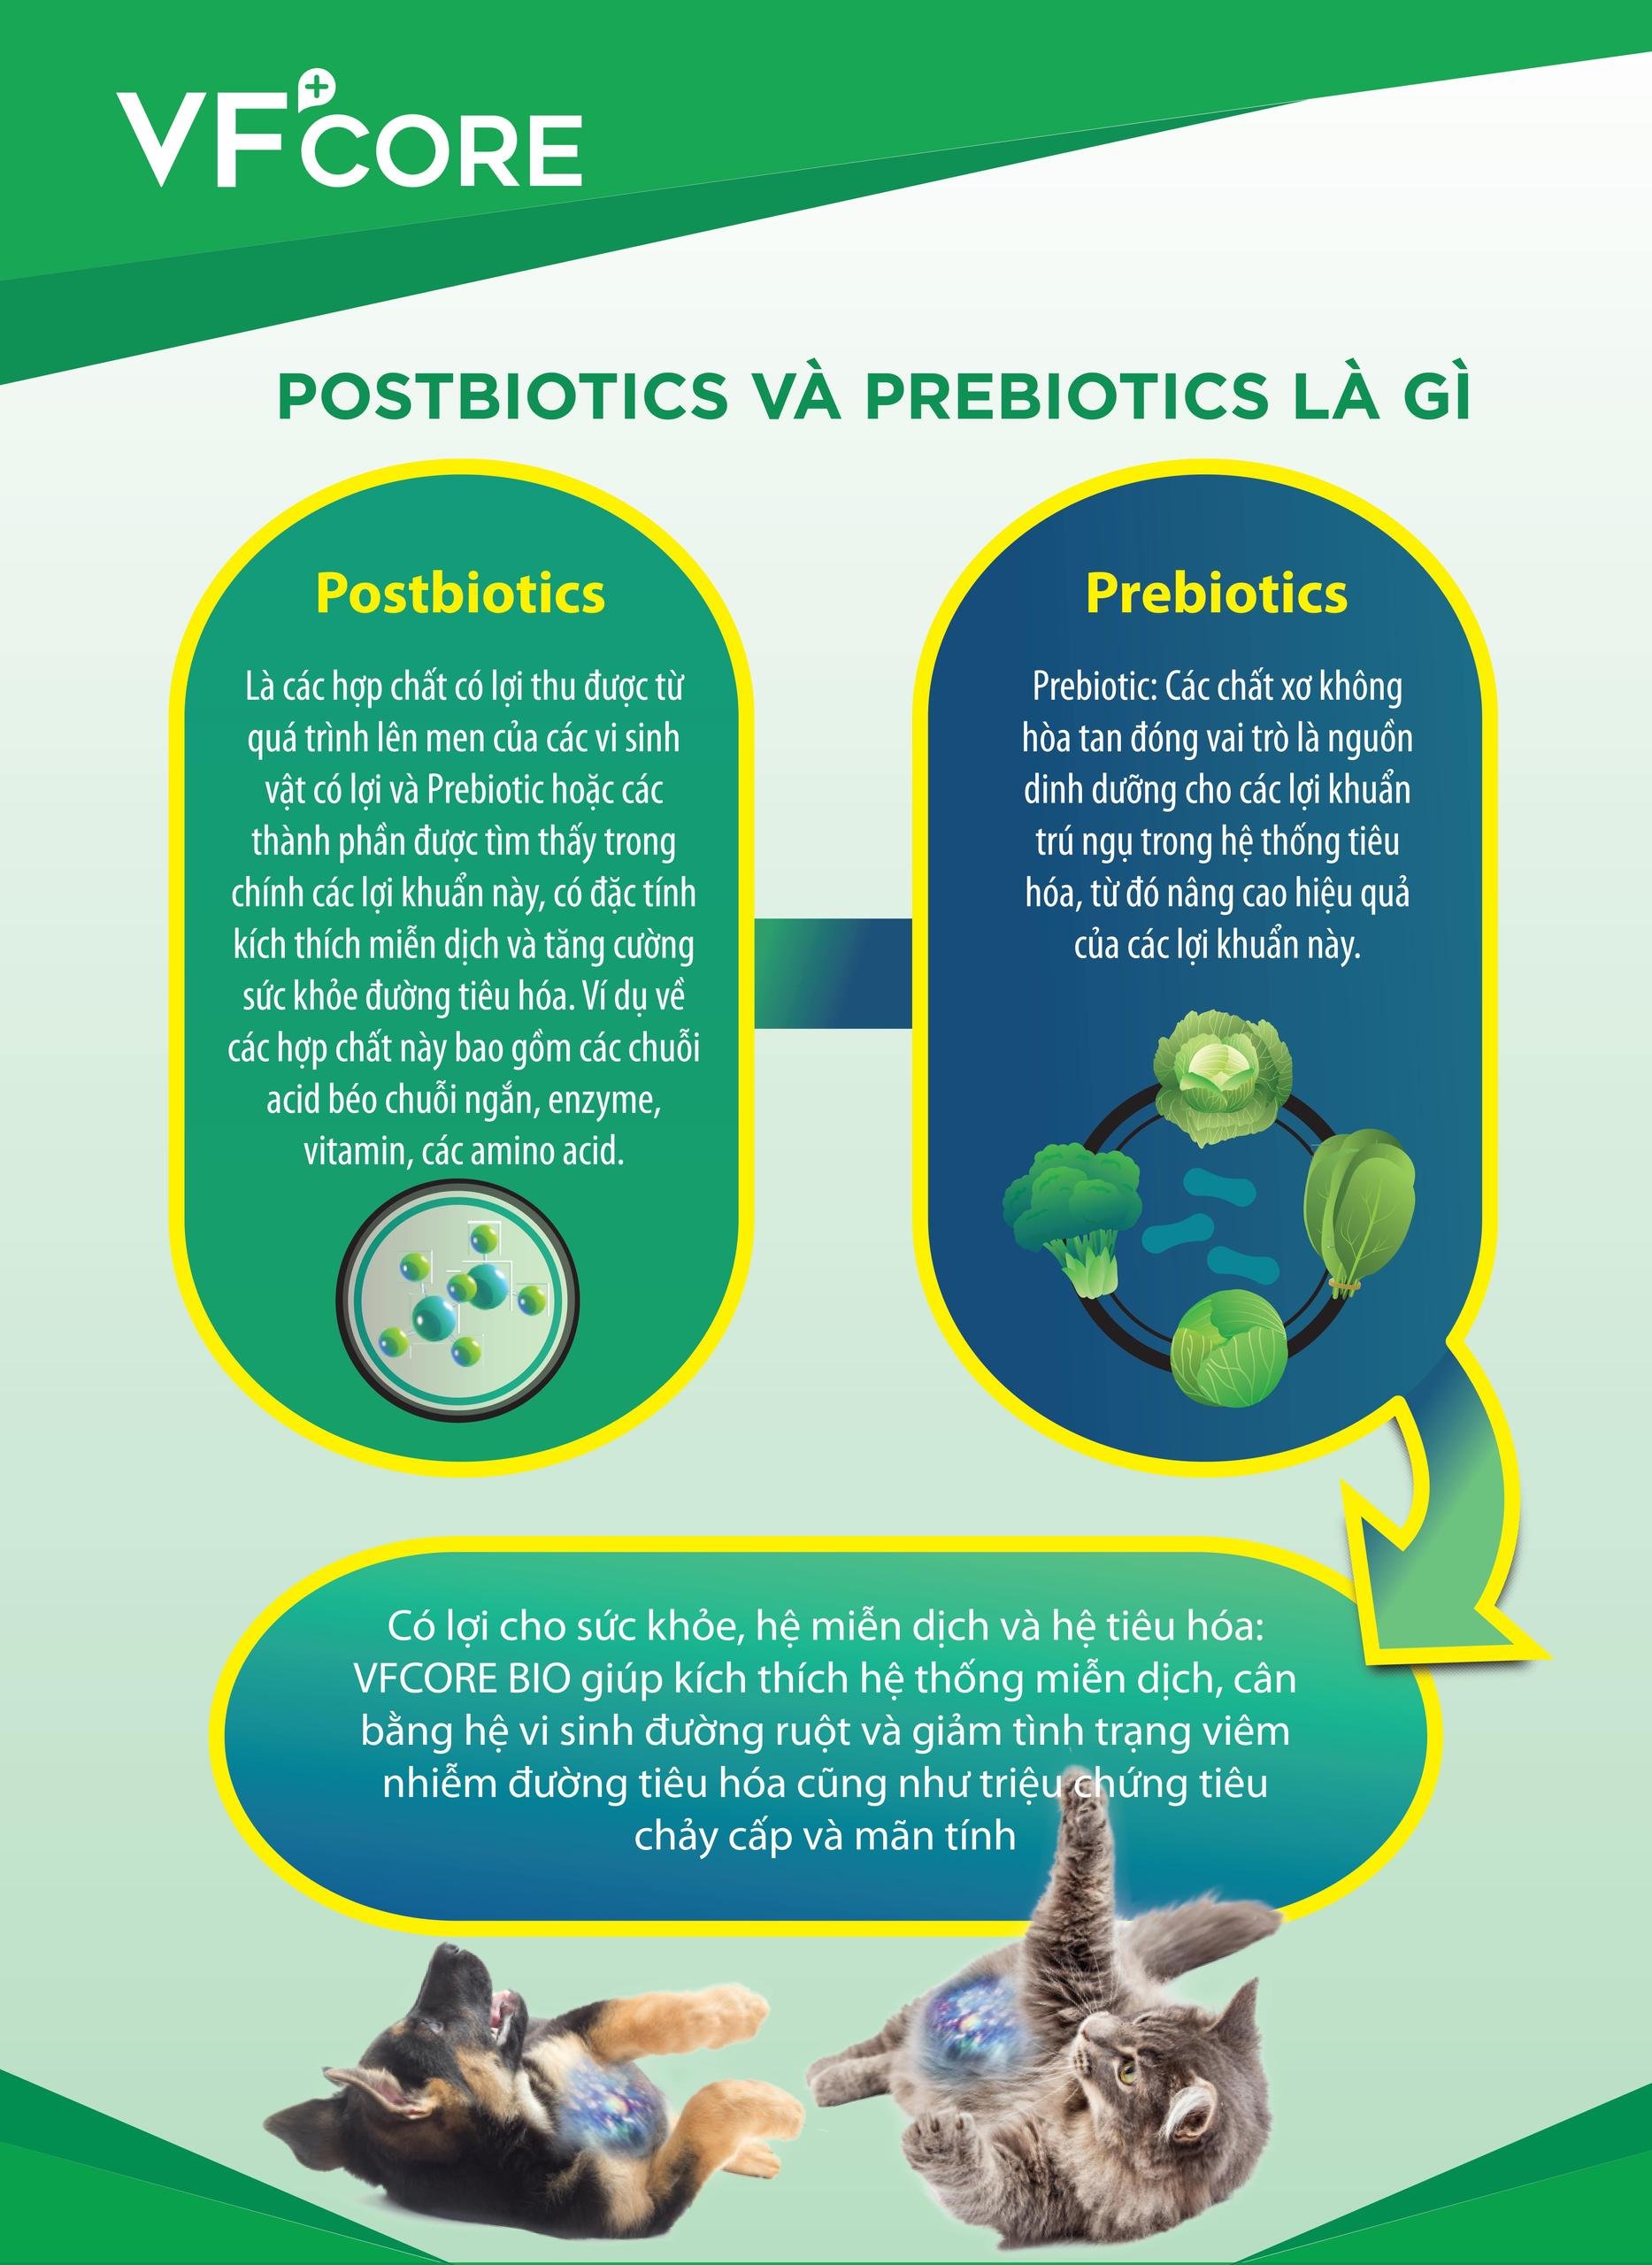 Postbiotics là các hợp chất có lợi thu được từ quá trình lên men của các vi sinh vật có lợi